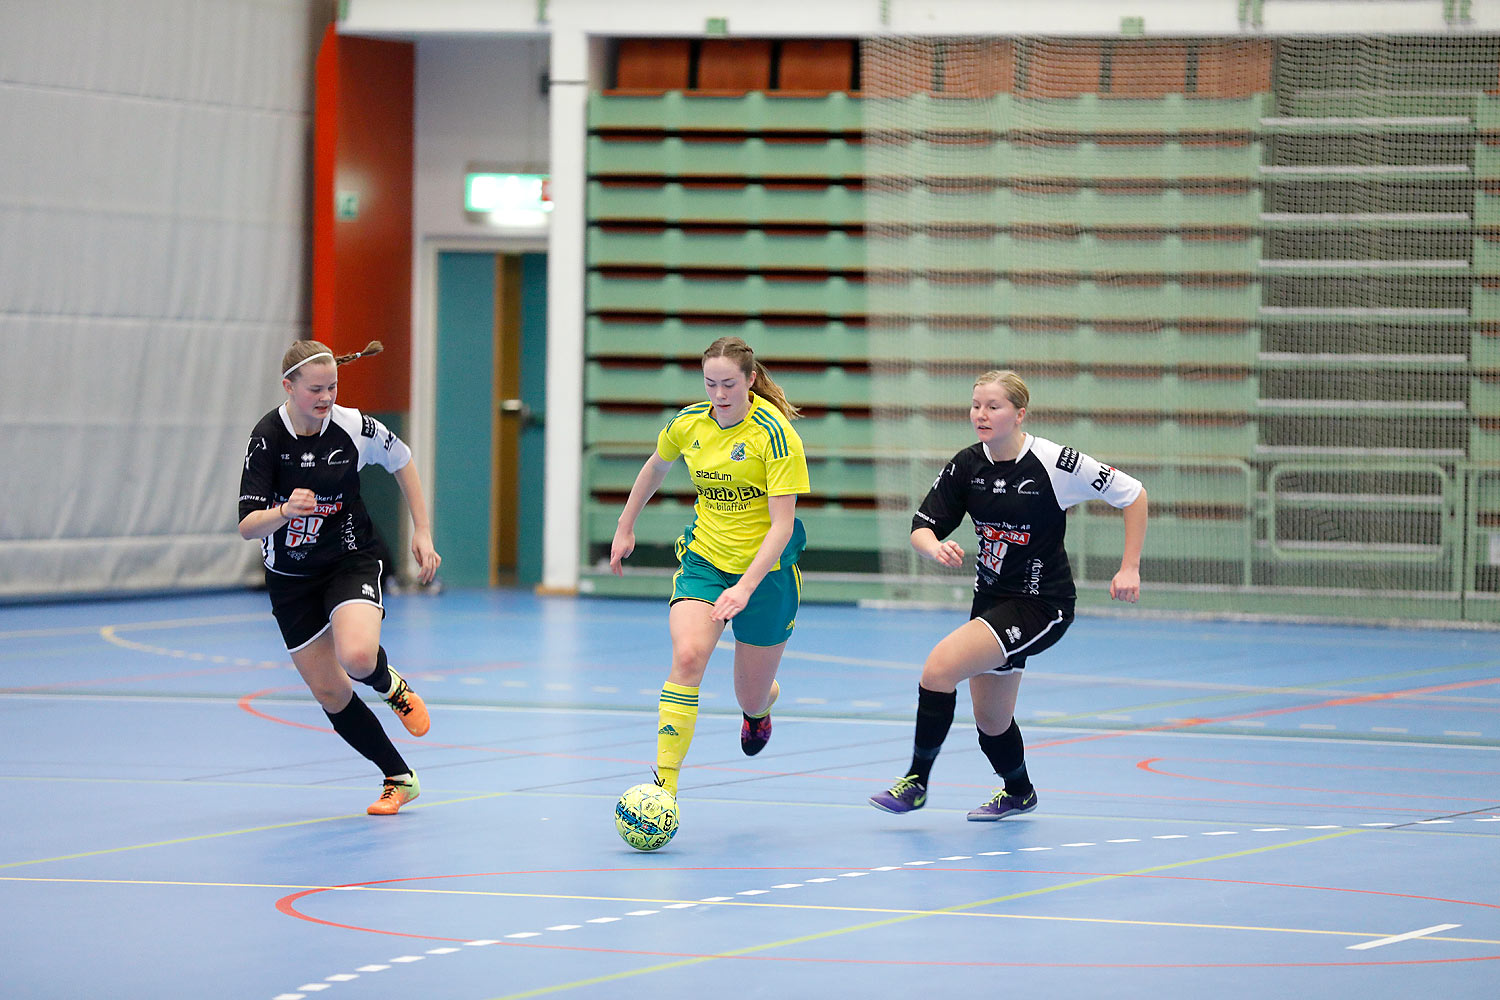 Skövde Futsalcup Damer Hertzöga BK 1-Skövde KIK,dam,Arena Skövde,Skövde,Sverige,Skövde Futsalcup 2016,Futsal,2016,141730